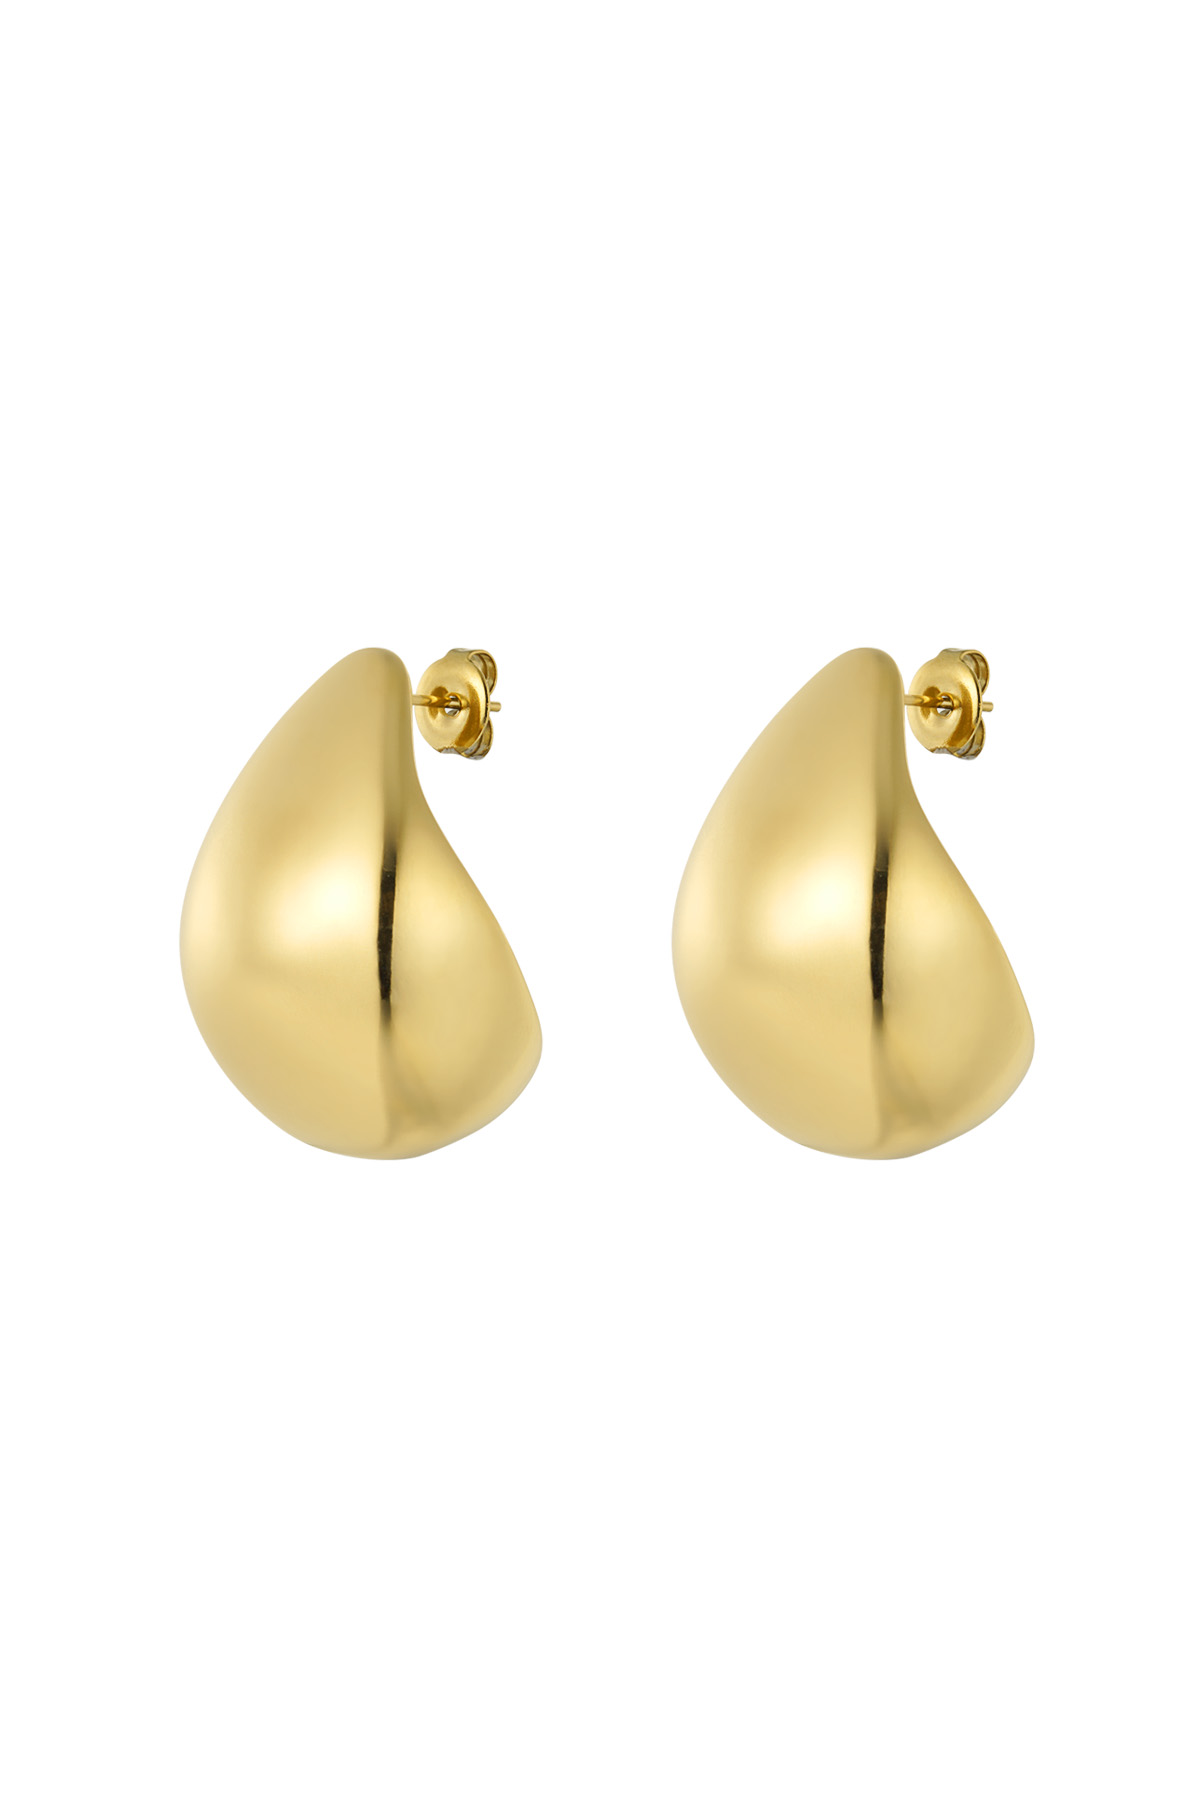 Earrings vintage drop - gold h5 